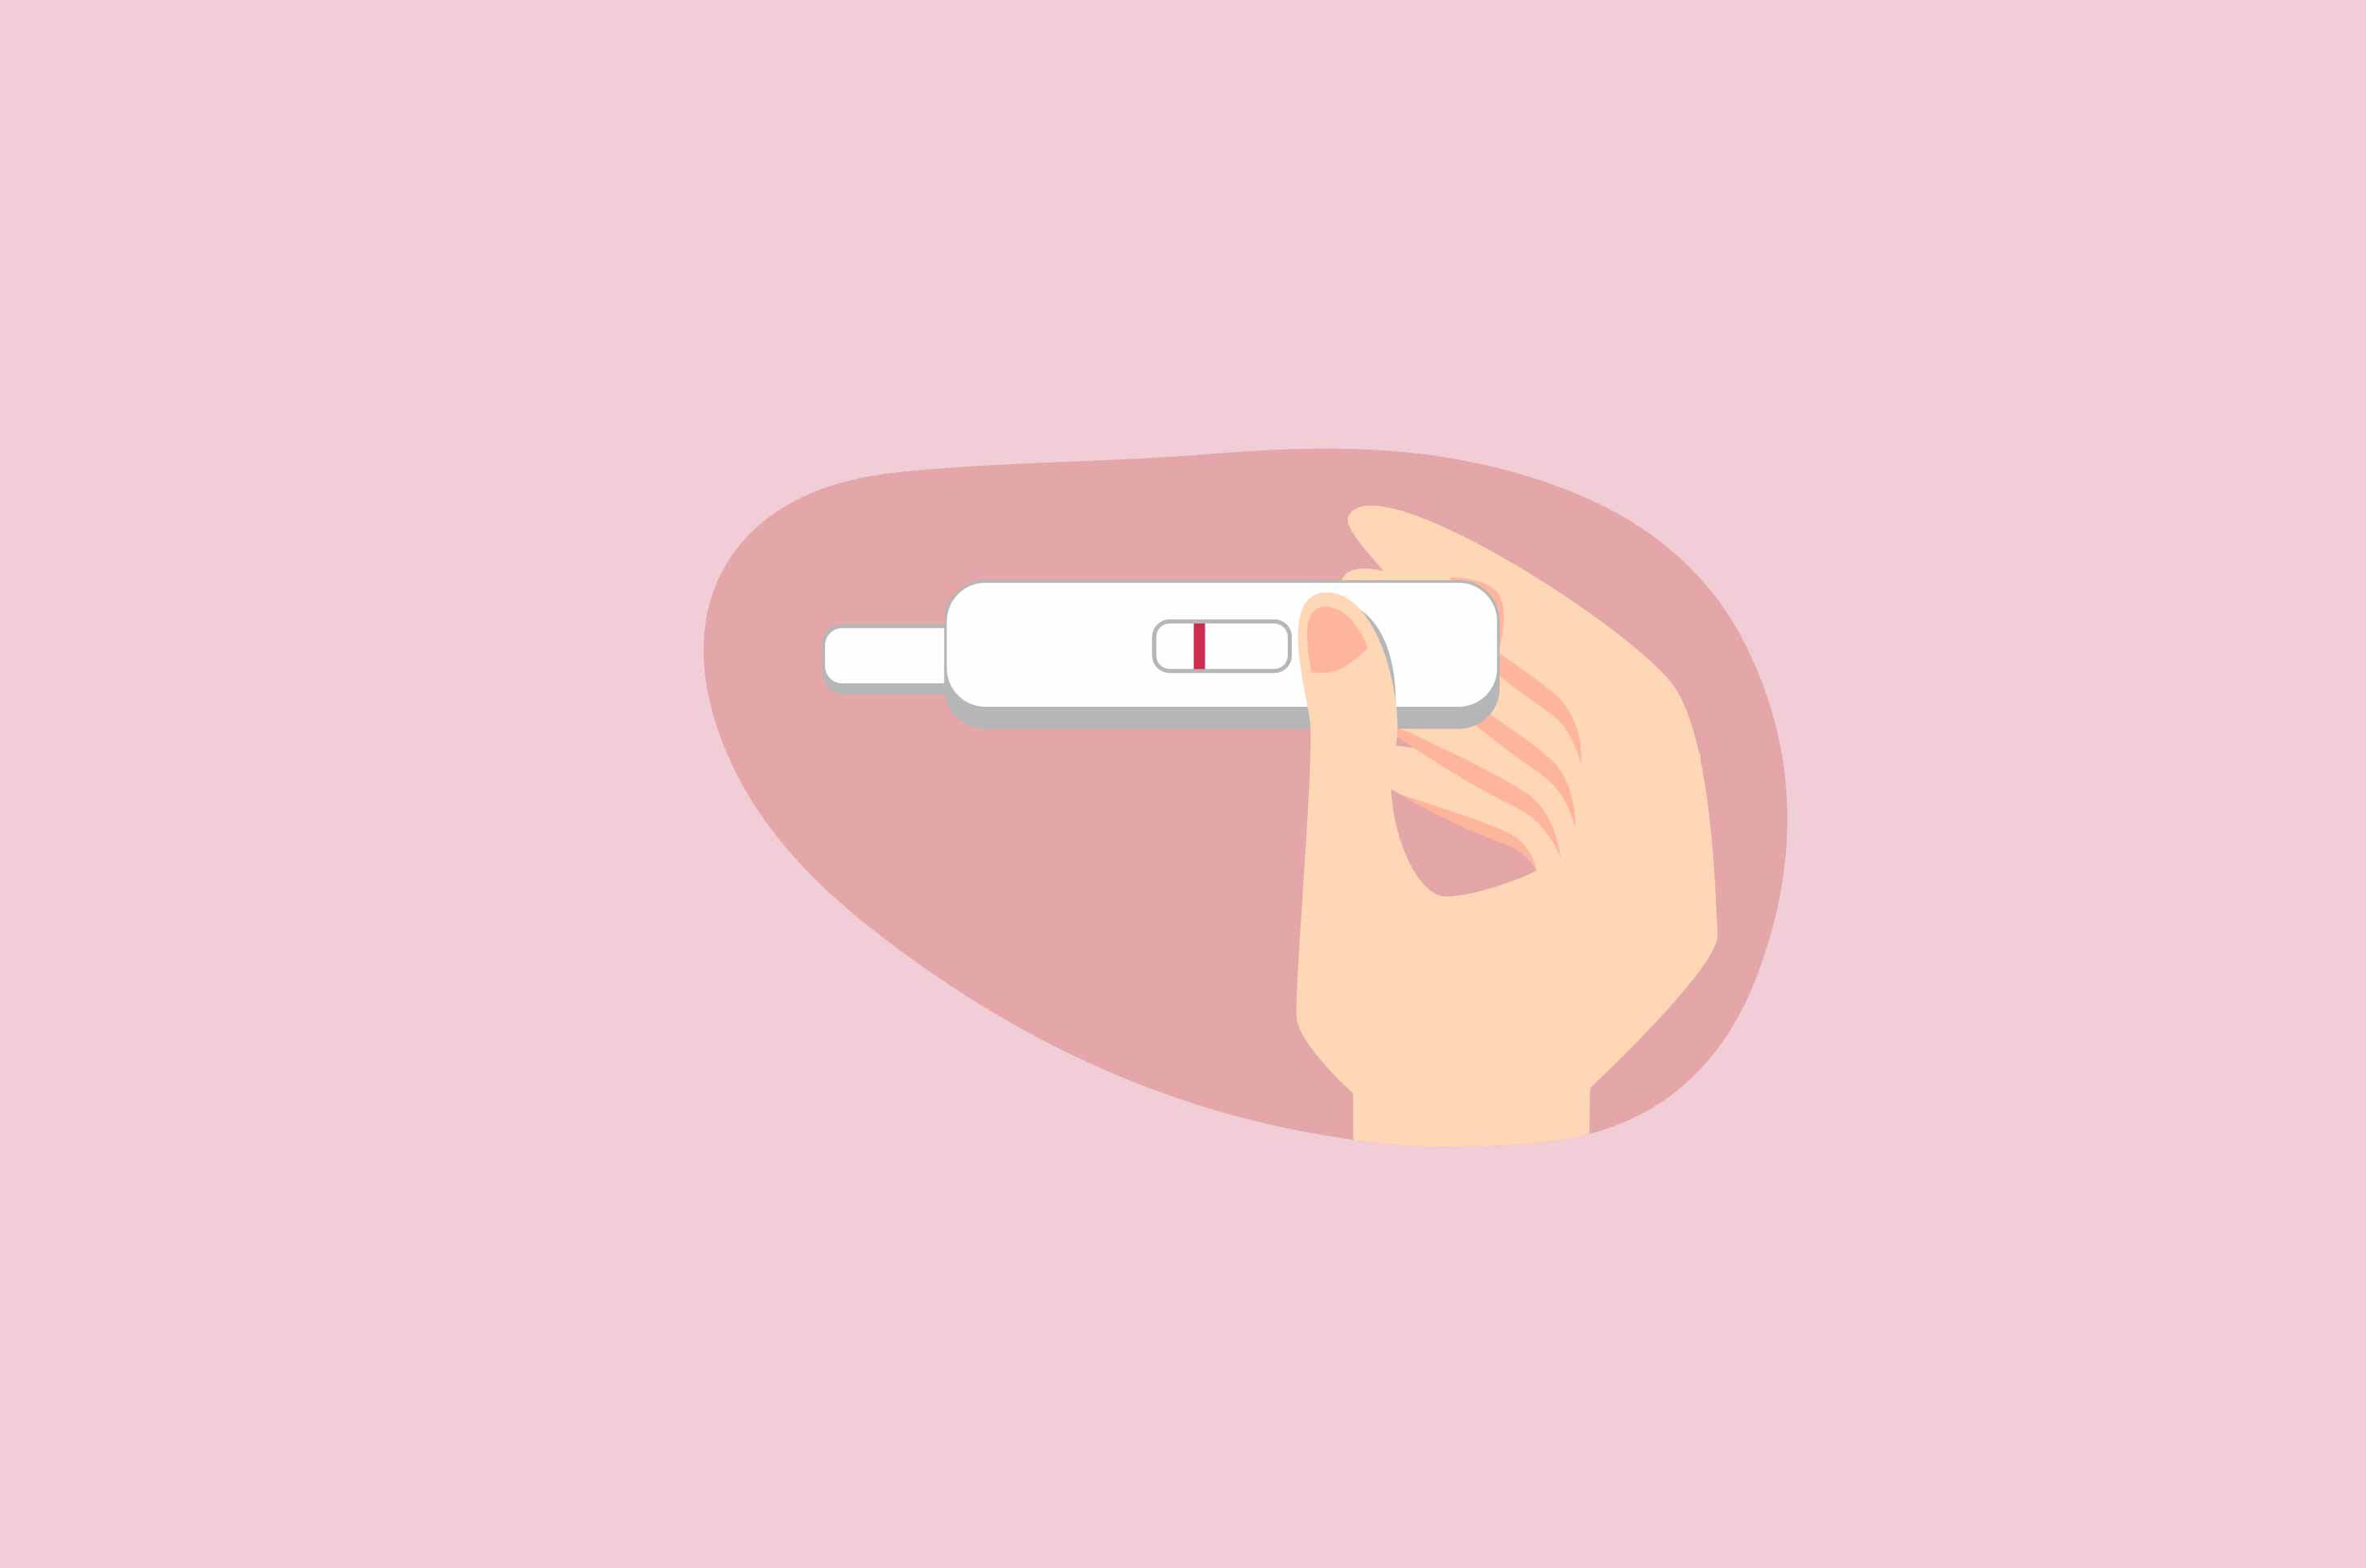 Vrouwen vinden het moeilijk om zwanger te worden vanwege onregelmatige menstruatie, wat is de reden?